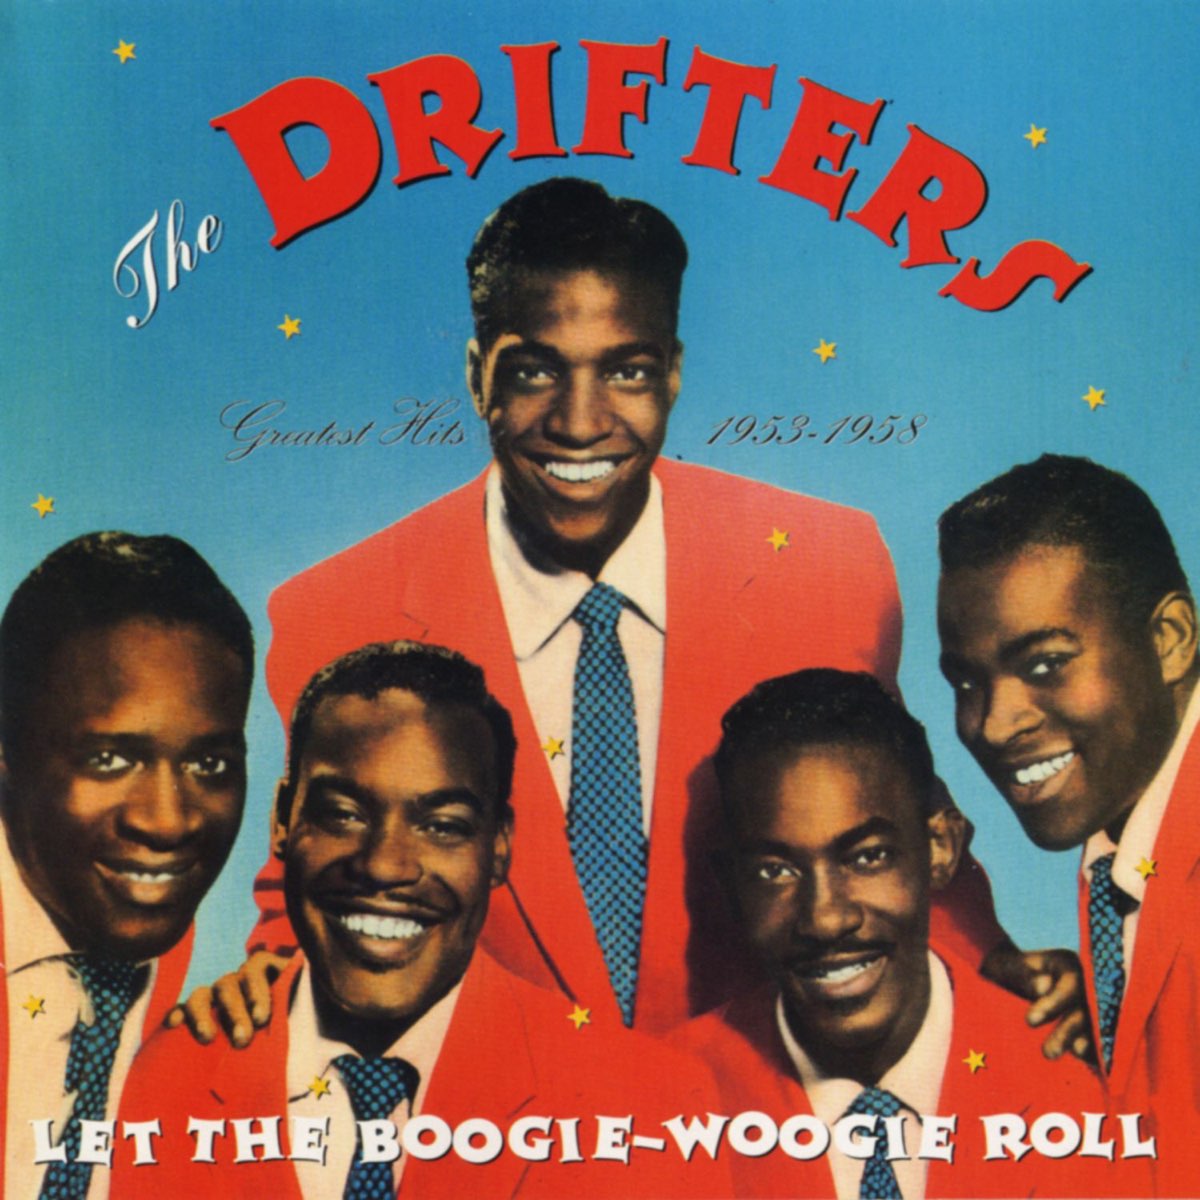 ザ・ドリフターズの「Let the Boogie-Woogie Roll: Greatest Hits 1953-1958」をApple Musicで